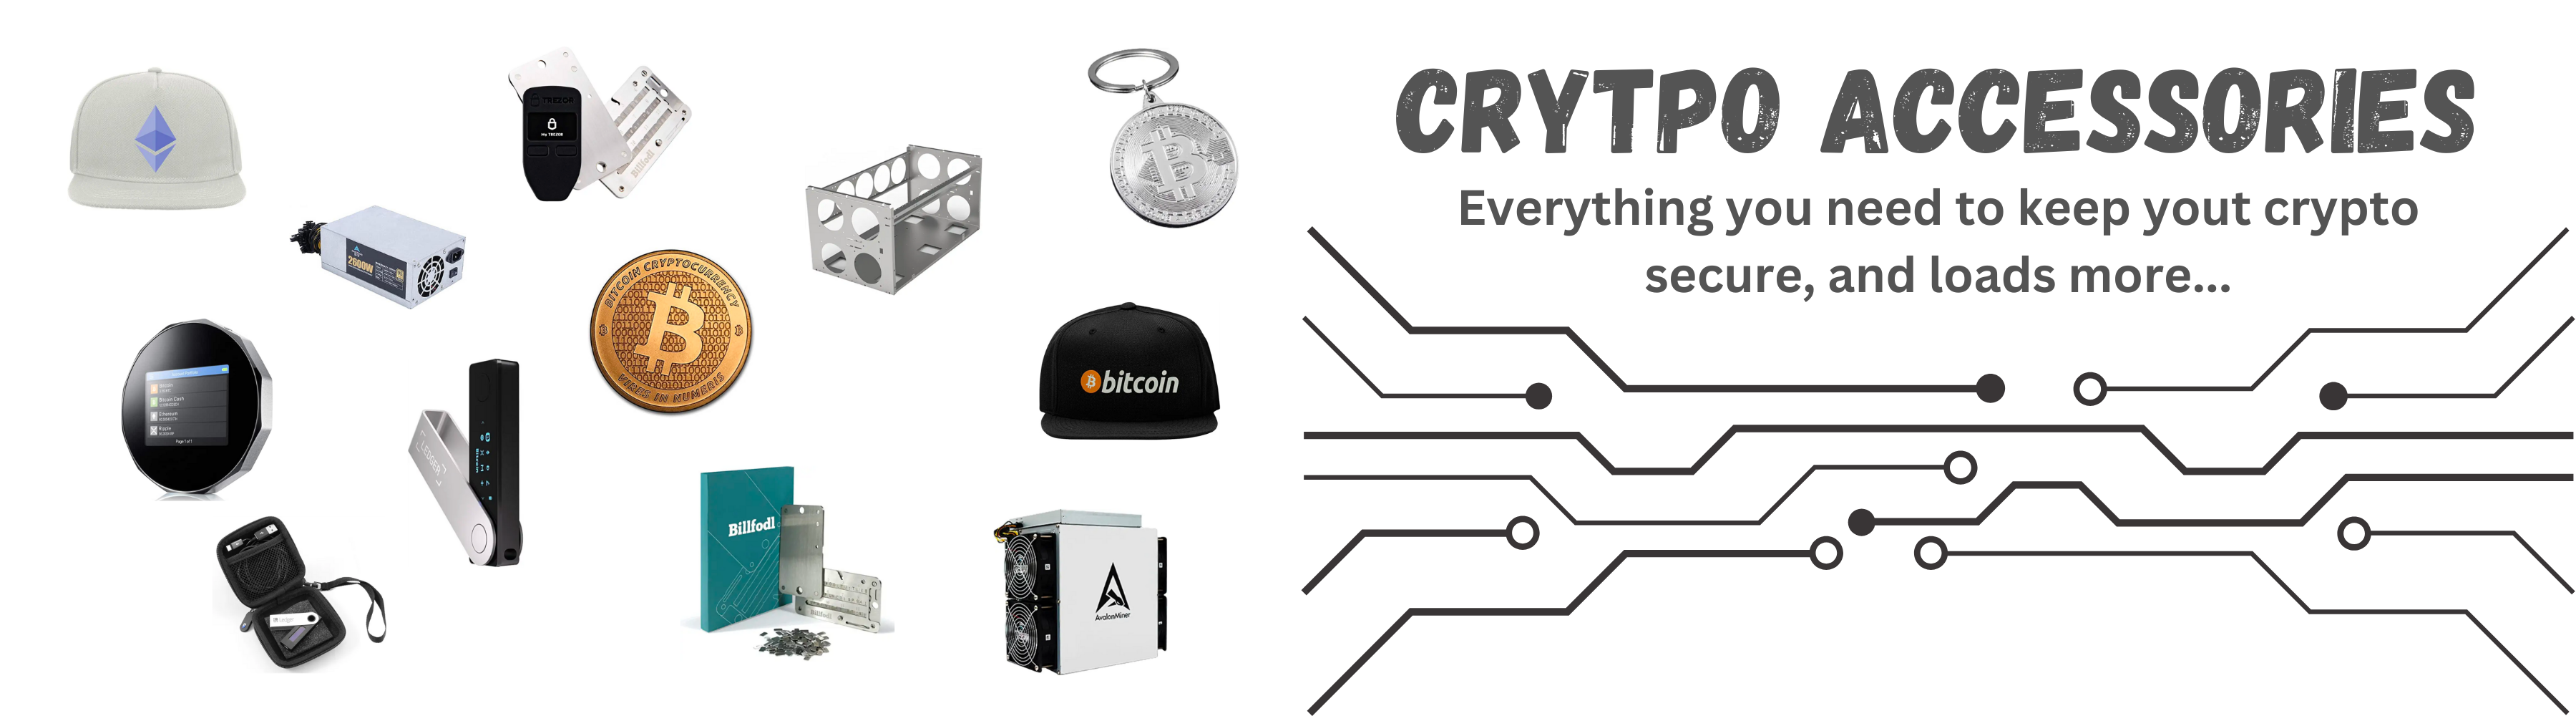 crypto accessories | booksaboutcrypto.com